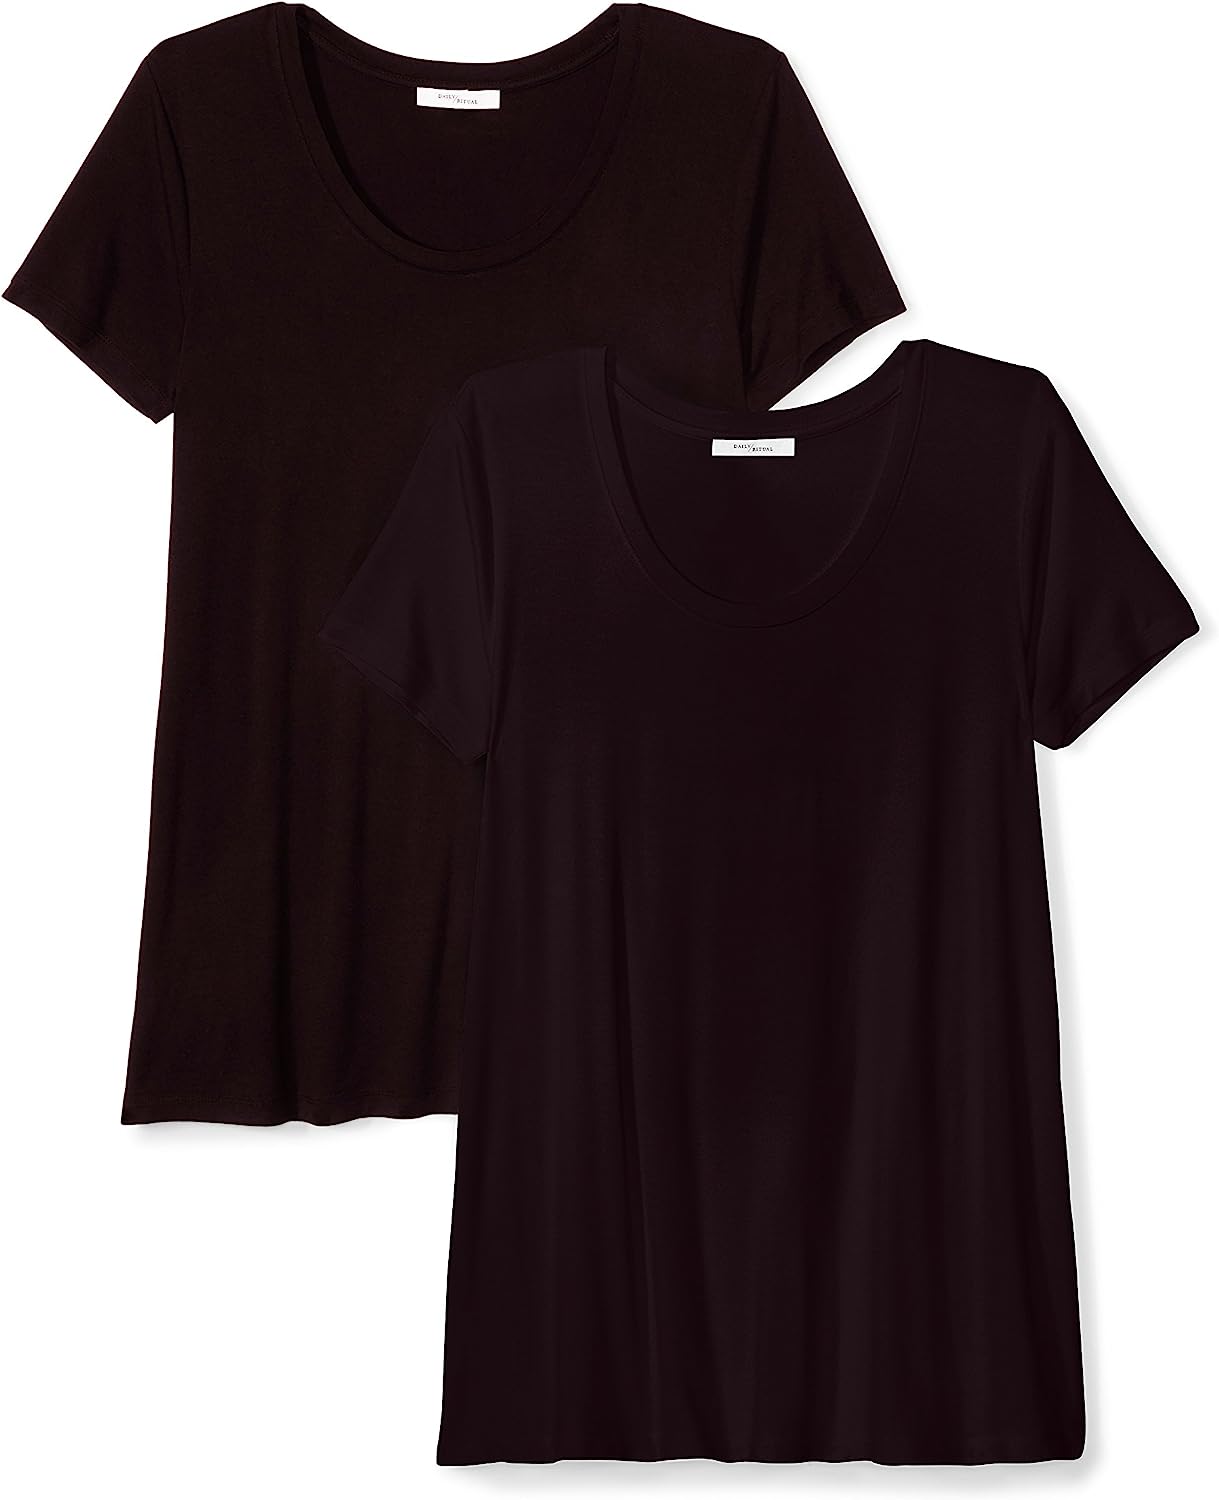 Daily Ritual Damen Kurzärmeliges Swing-T-Shirt Aus Jersey Mit U-Ausschnitt, Klassischer Schnitt, Schwarz, M